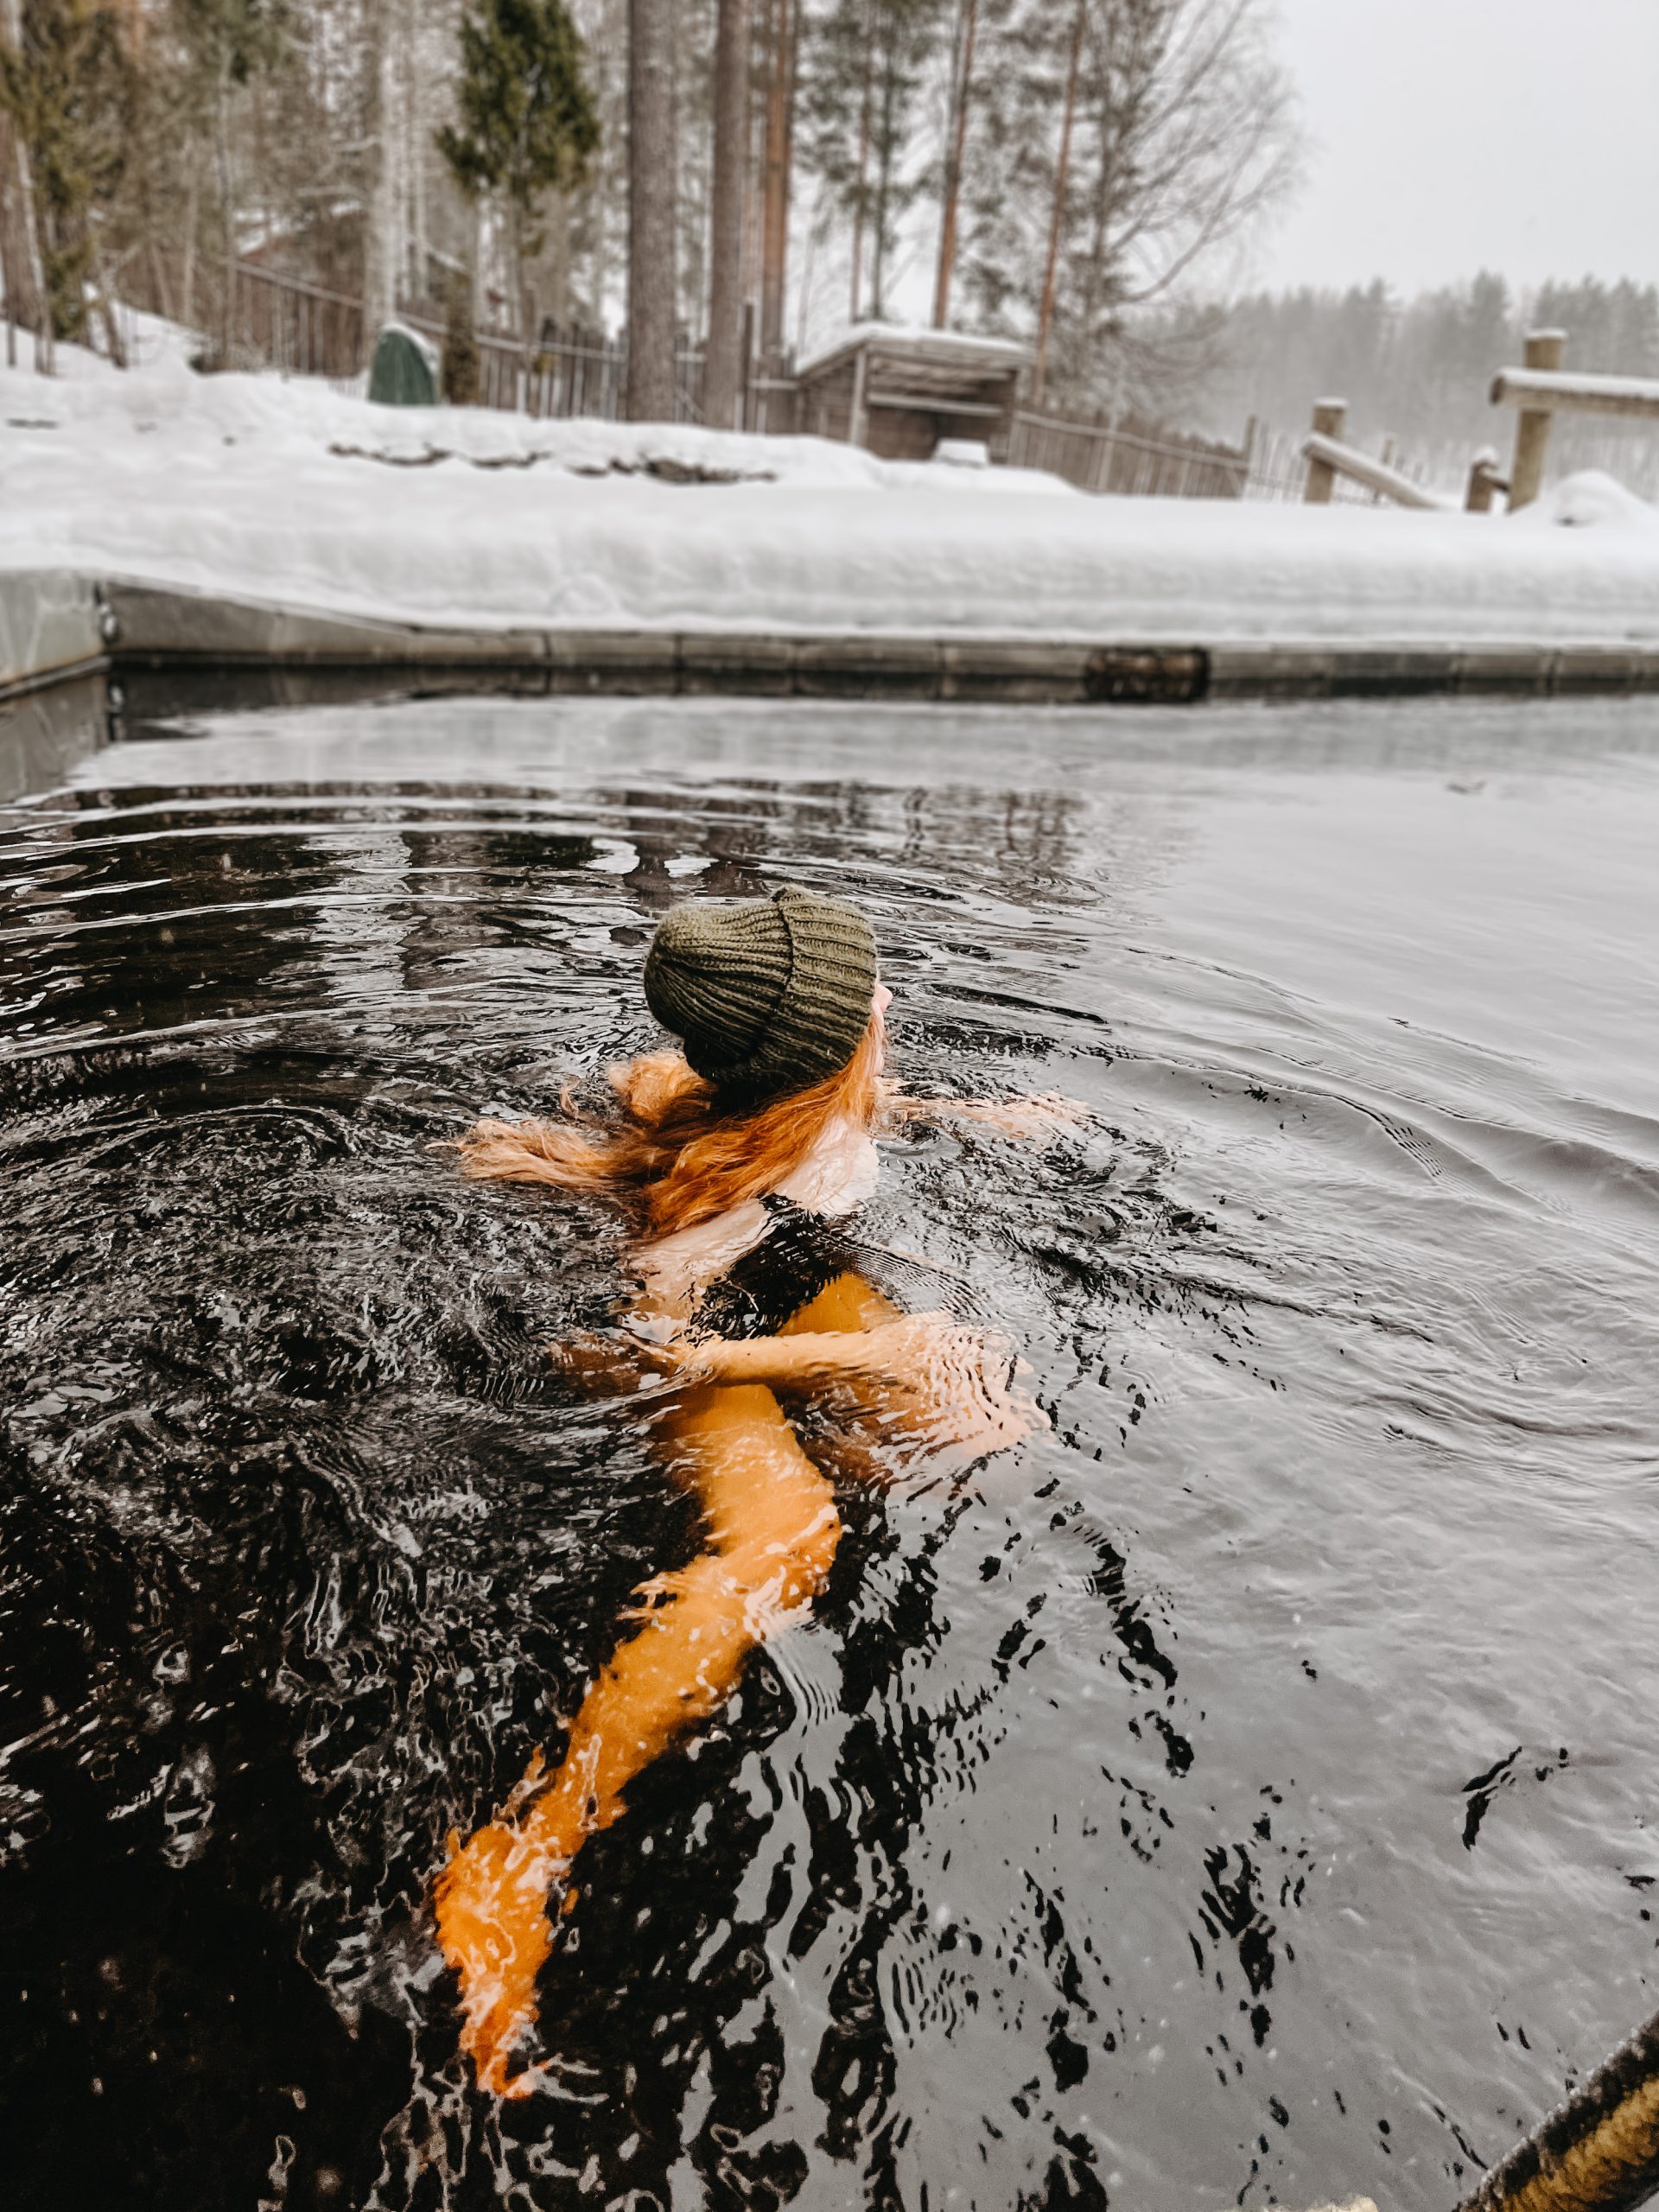 Järvisydän spa winter swimming